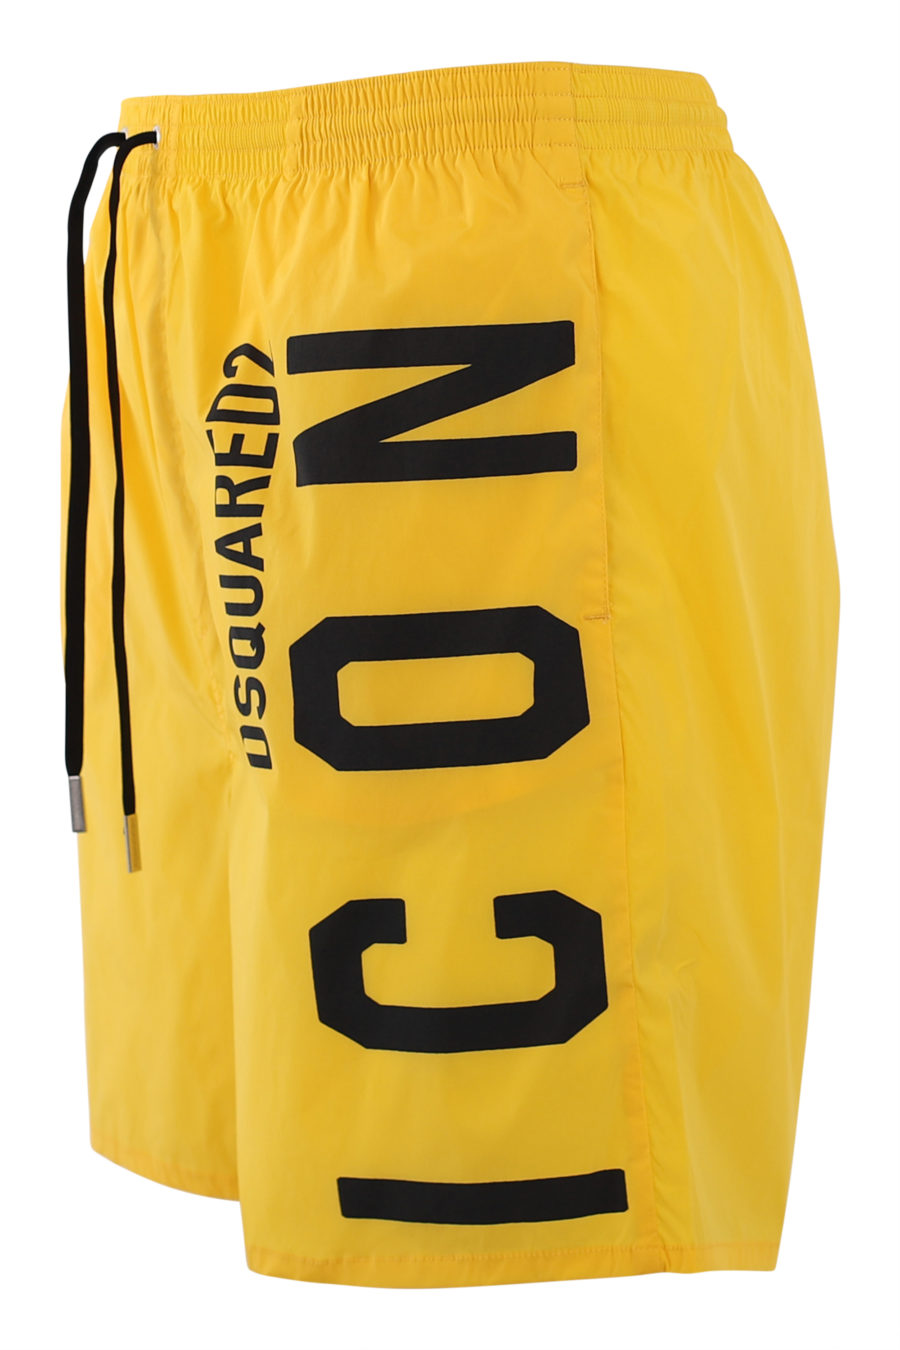 Bañador amarillo con logo "icon" negro lateral - IMG 6861